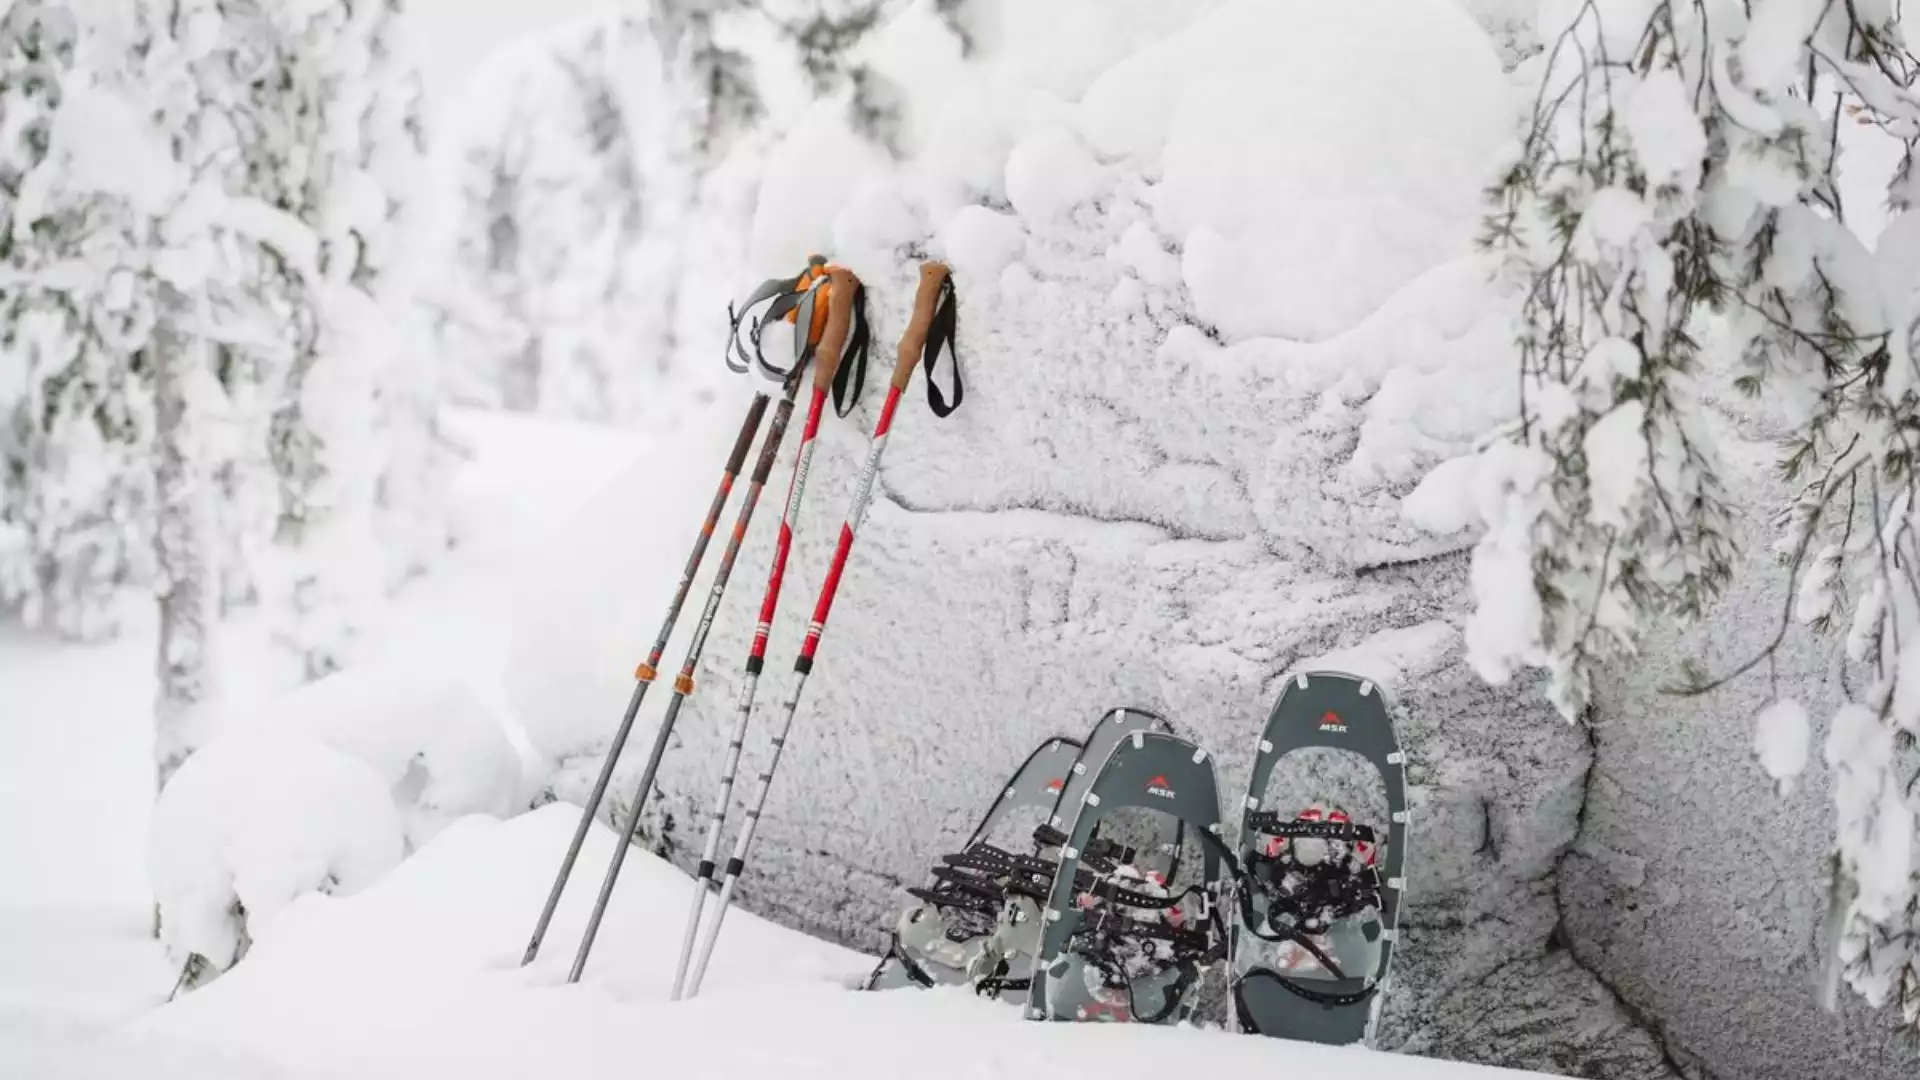 Ontdek de omgeving op sneeuwschoenen of ski's